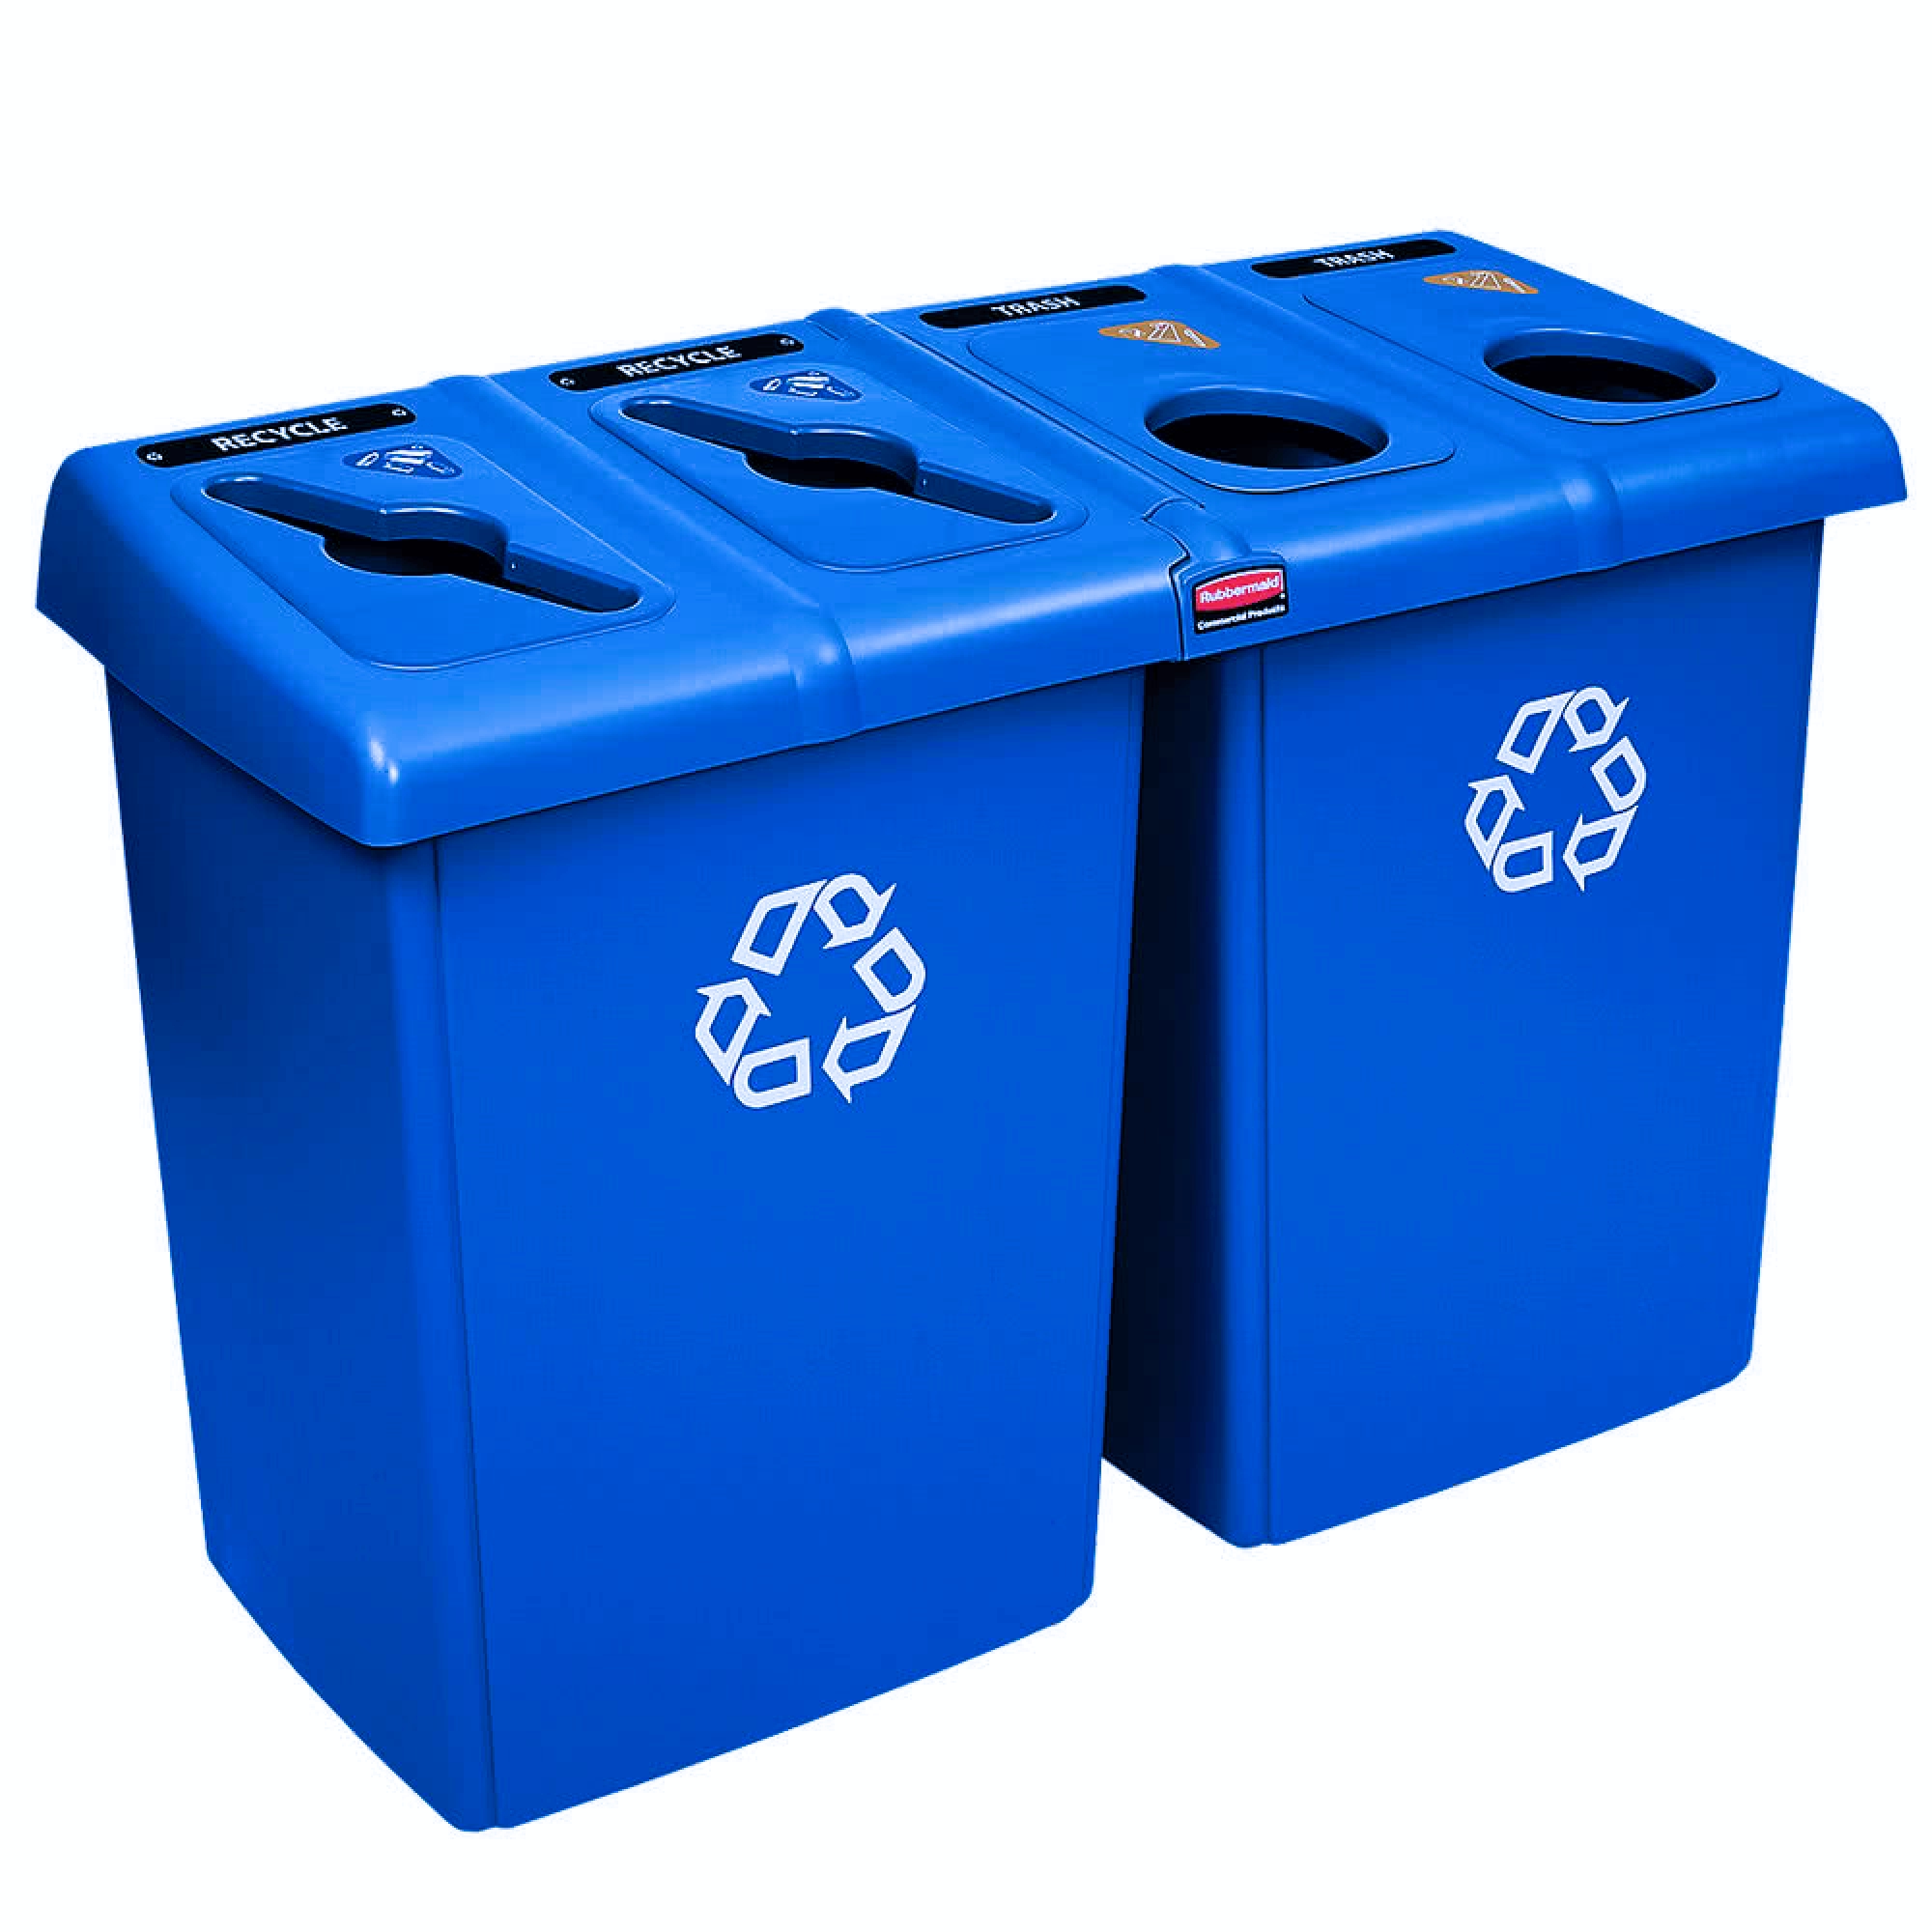 Rubbermaid 1792372 estación de reciclaje Glutton con 4 corrientes de desecho y capacidad para 92 galones, color azul